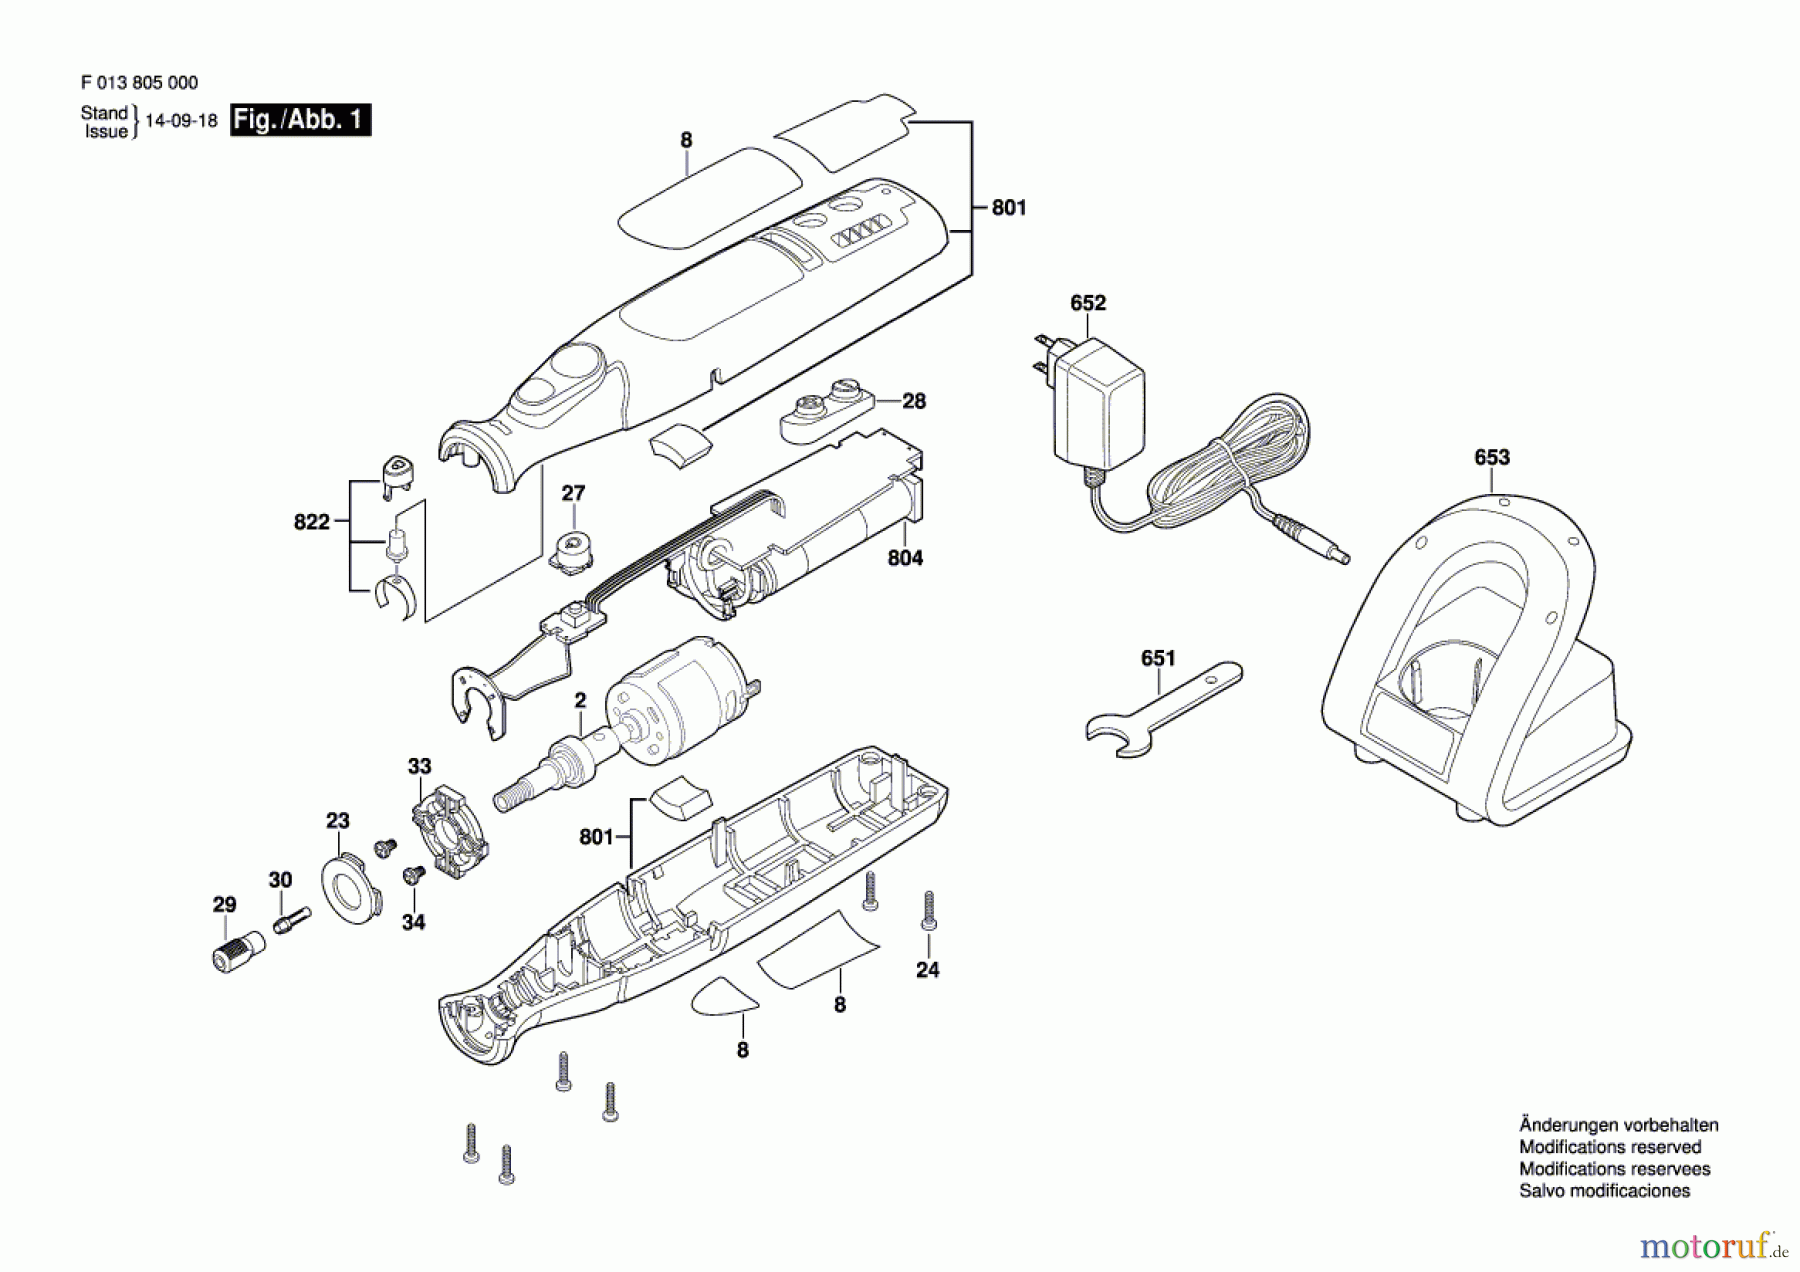  Bosch Werkzeug Drehwerkzeug 8050 Seite 1